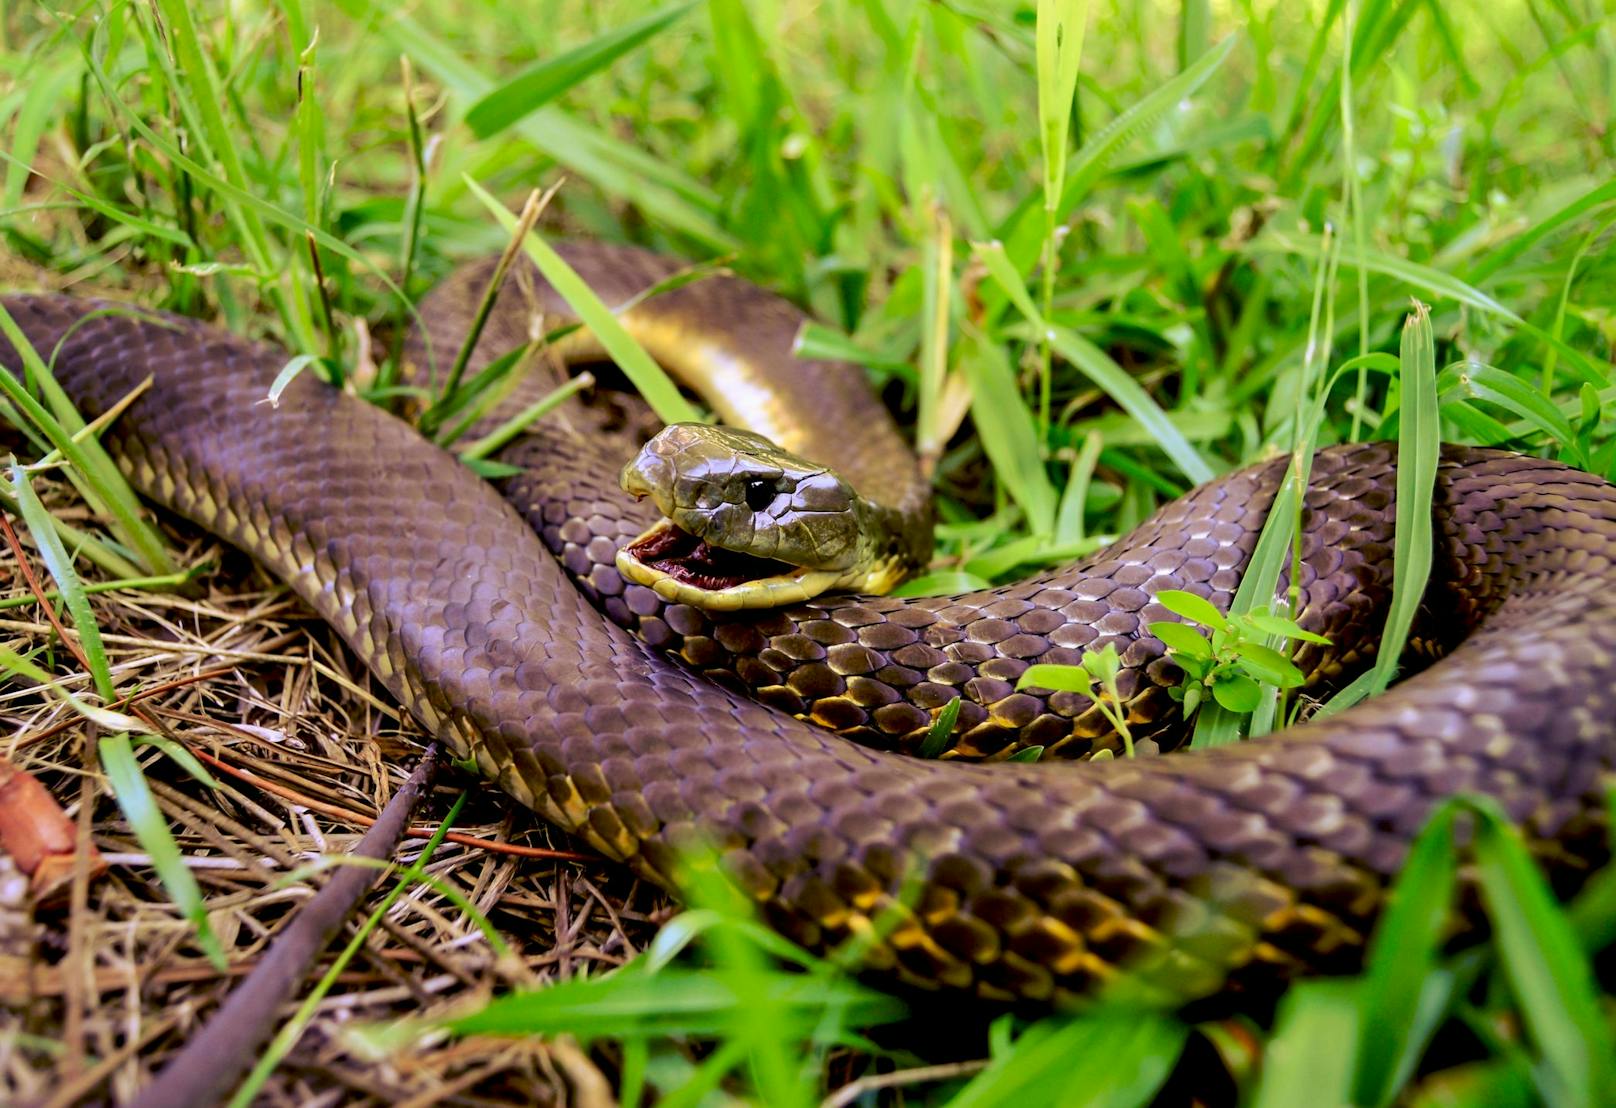 Die "<strong>Braunschlange</strong>" gehört ebenfalls zu den giftigsten Schlangen weltweit und fordert in Australien regelmäßig ihre Opfer.&nbsp;